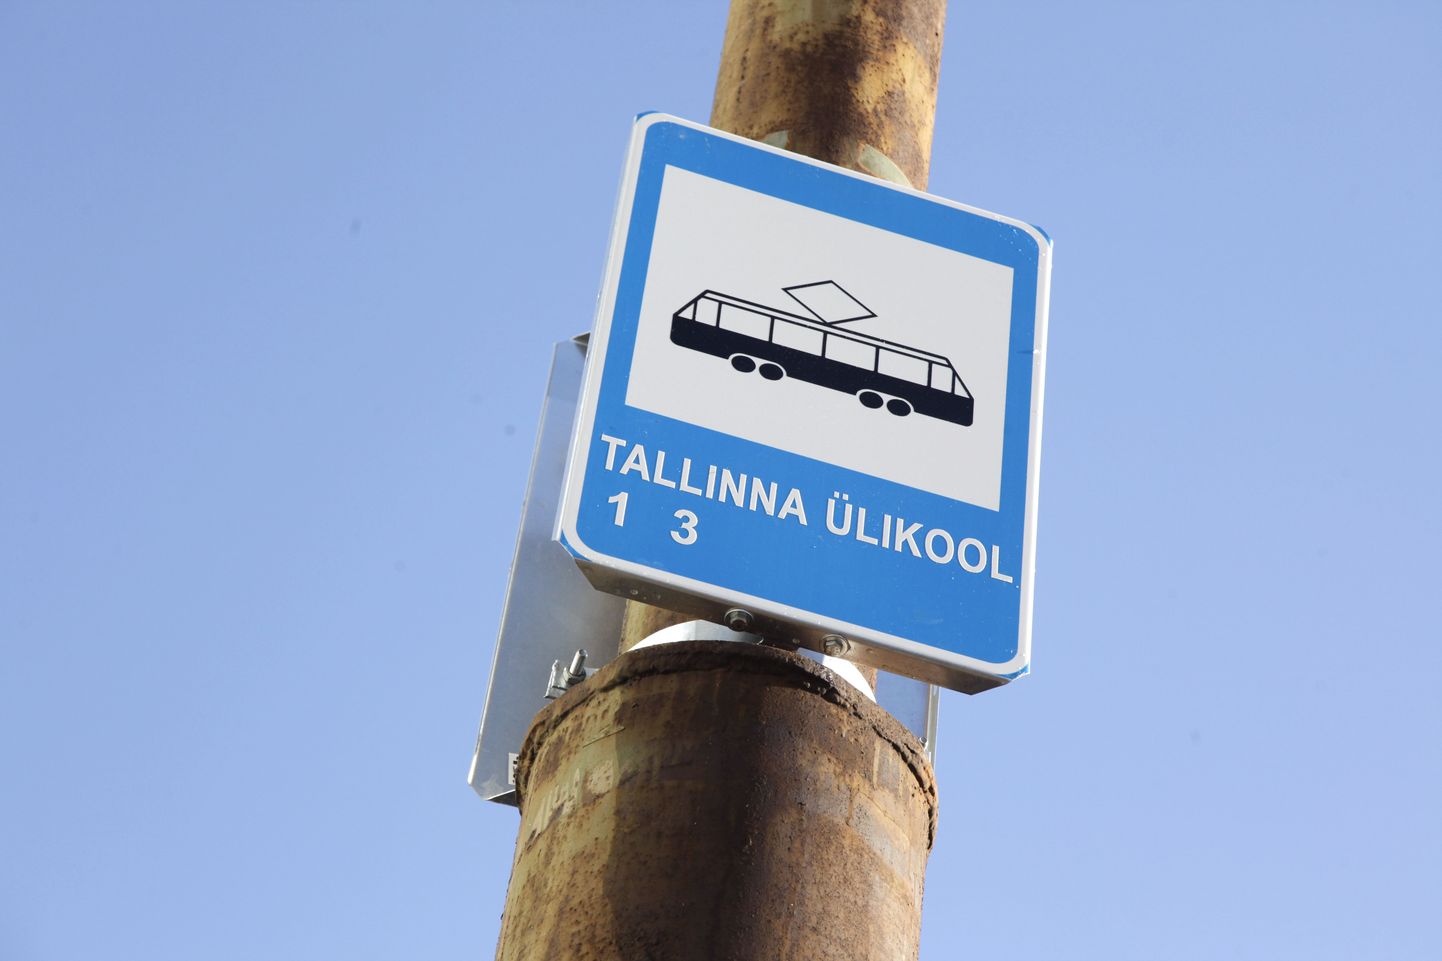 Tallinna Ülikooli trammipeatus.